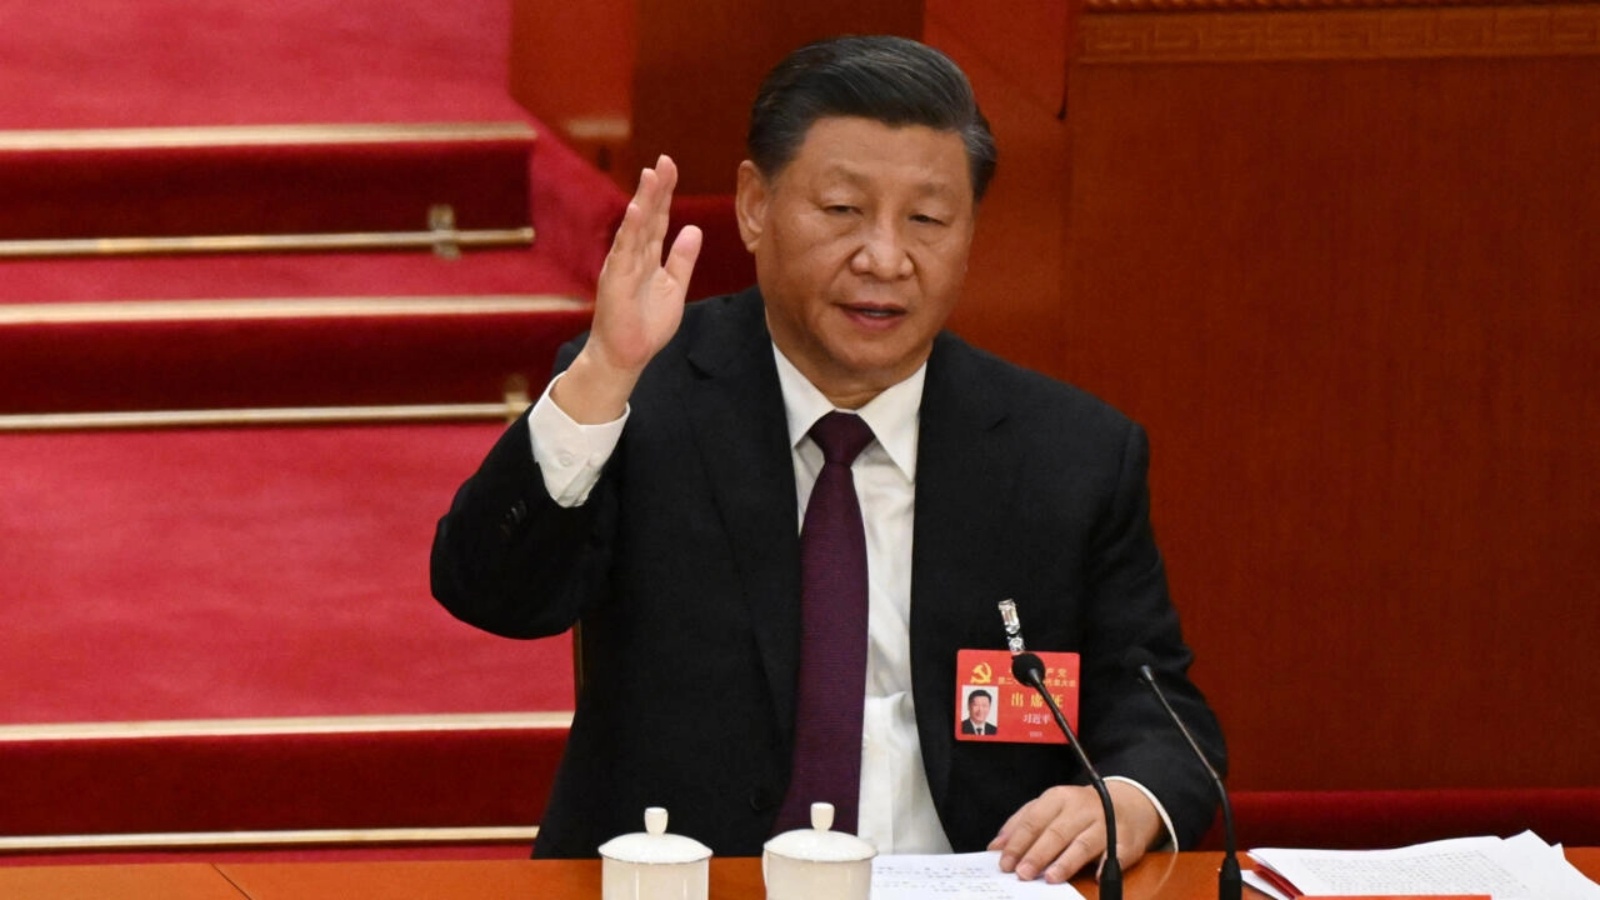 الرئيس الصيني شي جينبينغ خلال الجلسة الافتتاحية للمؤتمر العشرين للحزب الشيوعي الصيني في قاعة الشعب الكبرى في بكين يوم الأحد 23 أكتوبر 2022